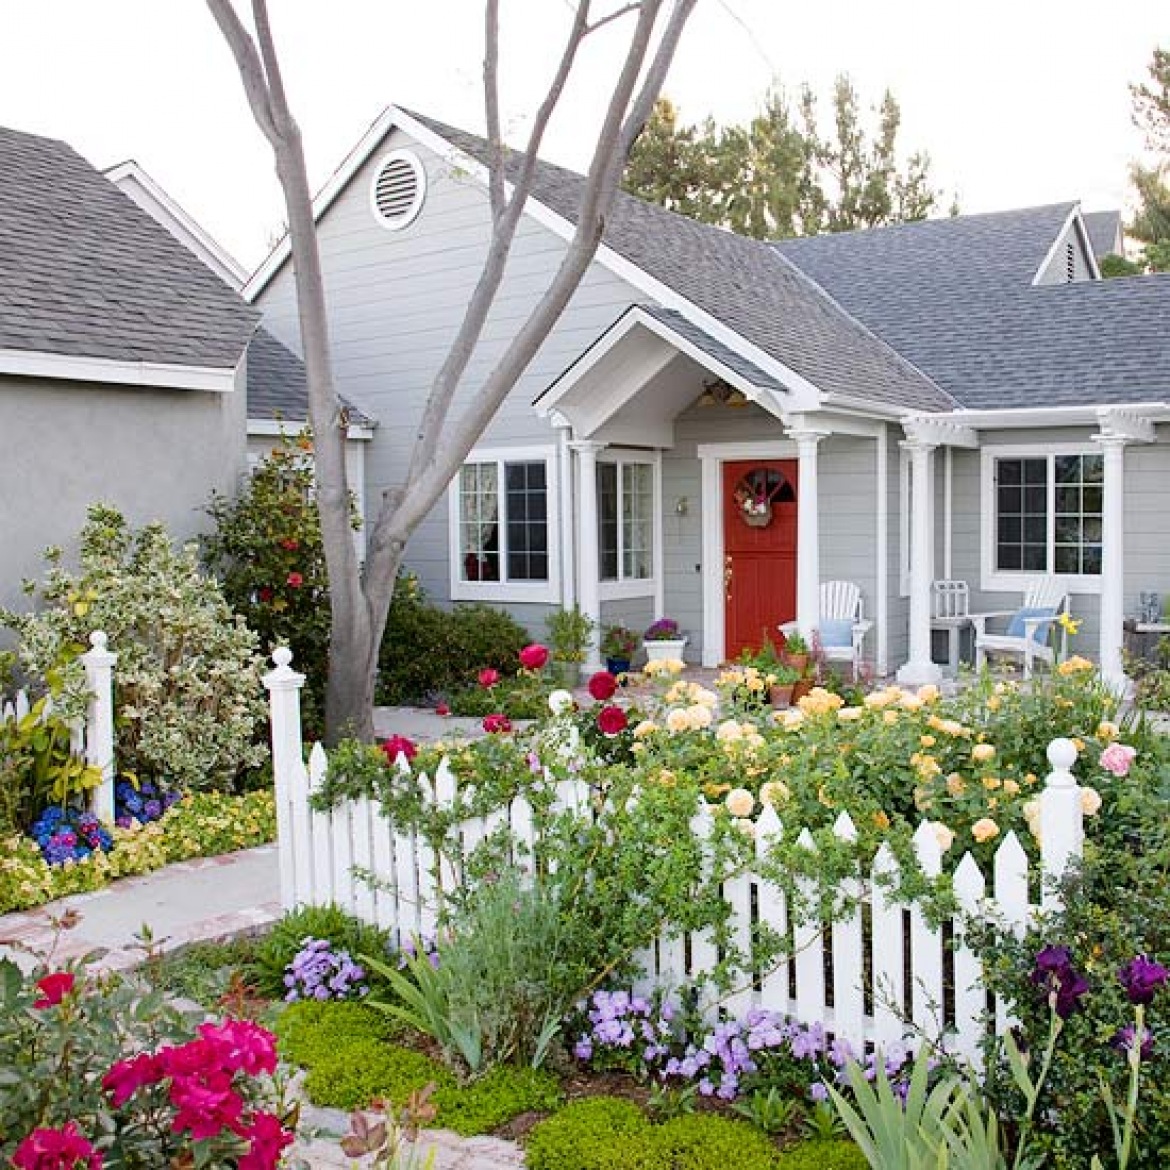 Красивые цветы перед домом. Цветник перед домом. Красивый палисадник. Красивый цветник перед домом. Палисадн к перед домрм.